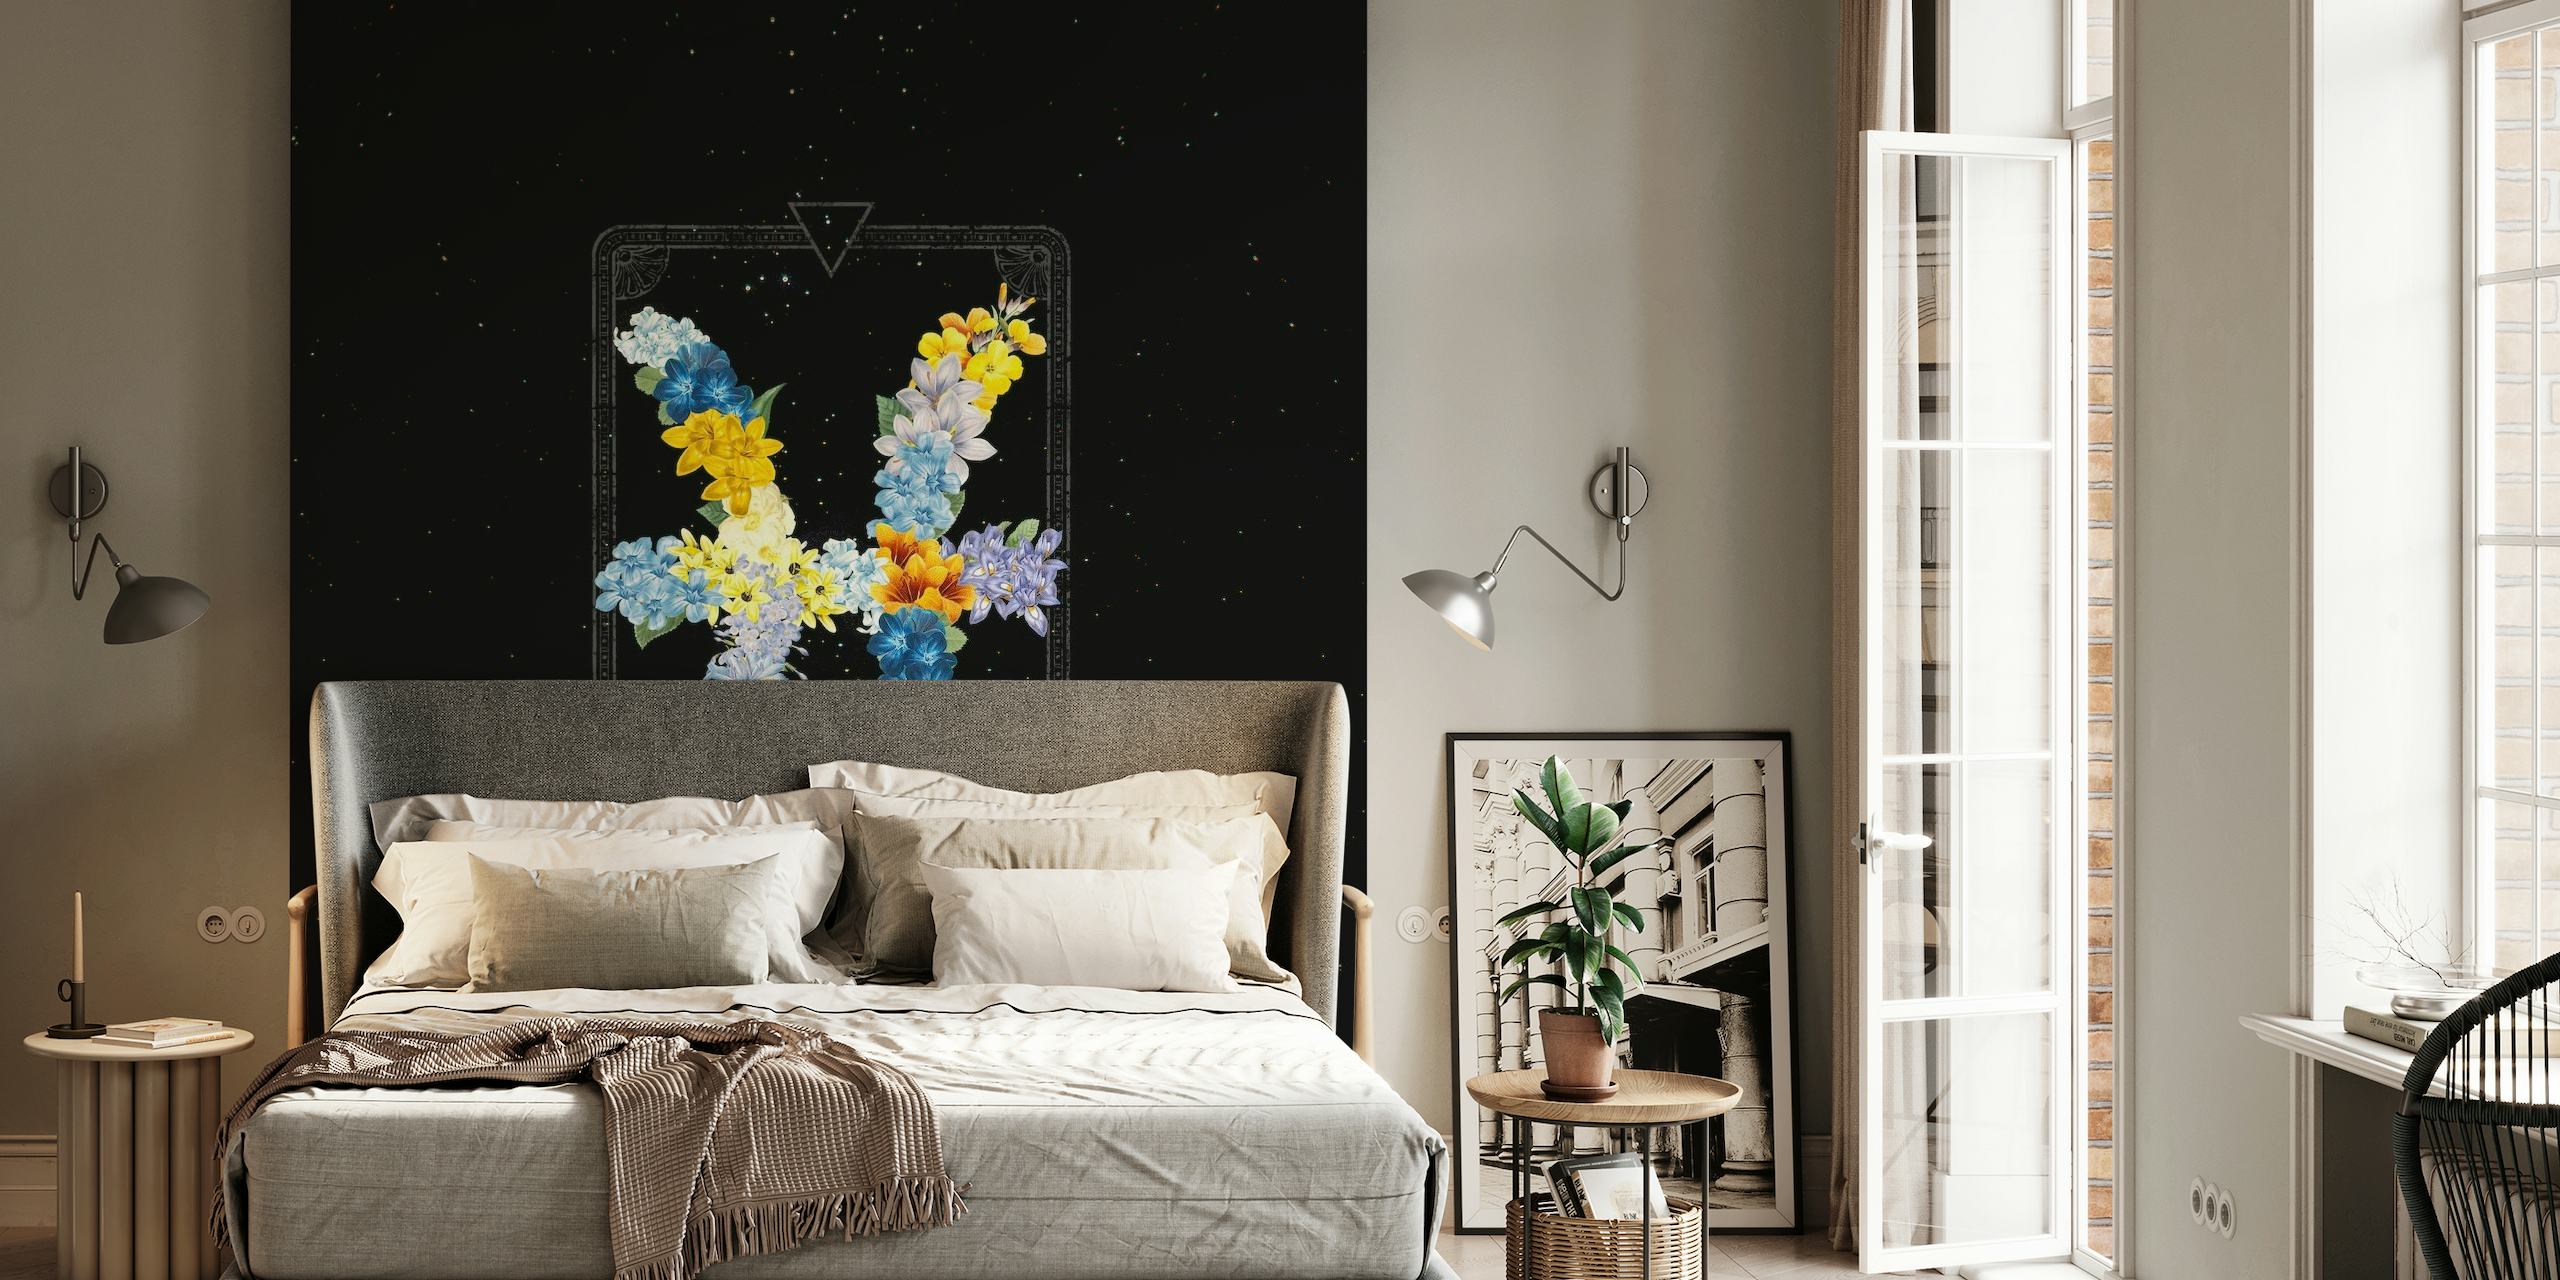 Fotomural con estampado floral del signo del zodíaco de Piscis sobre un fondo de noche estrellada